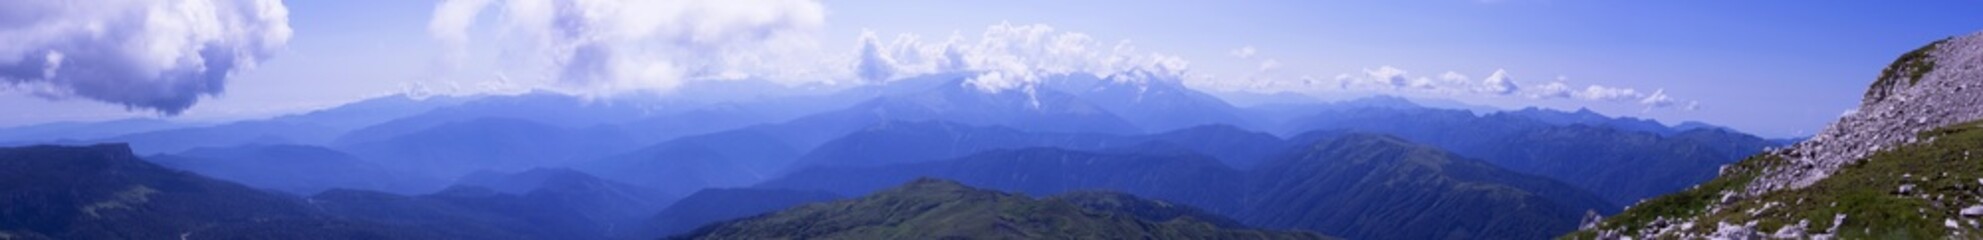 Panorama Caucasus Mountains, with slopes Oshten